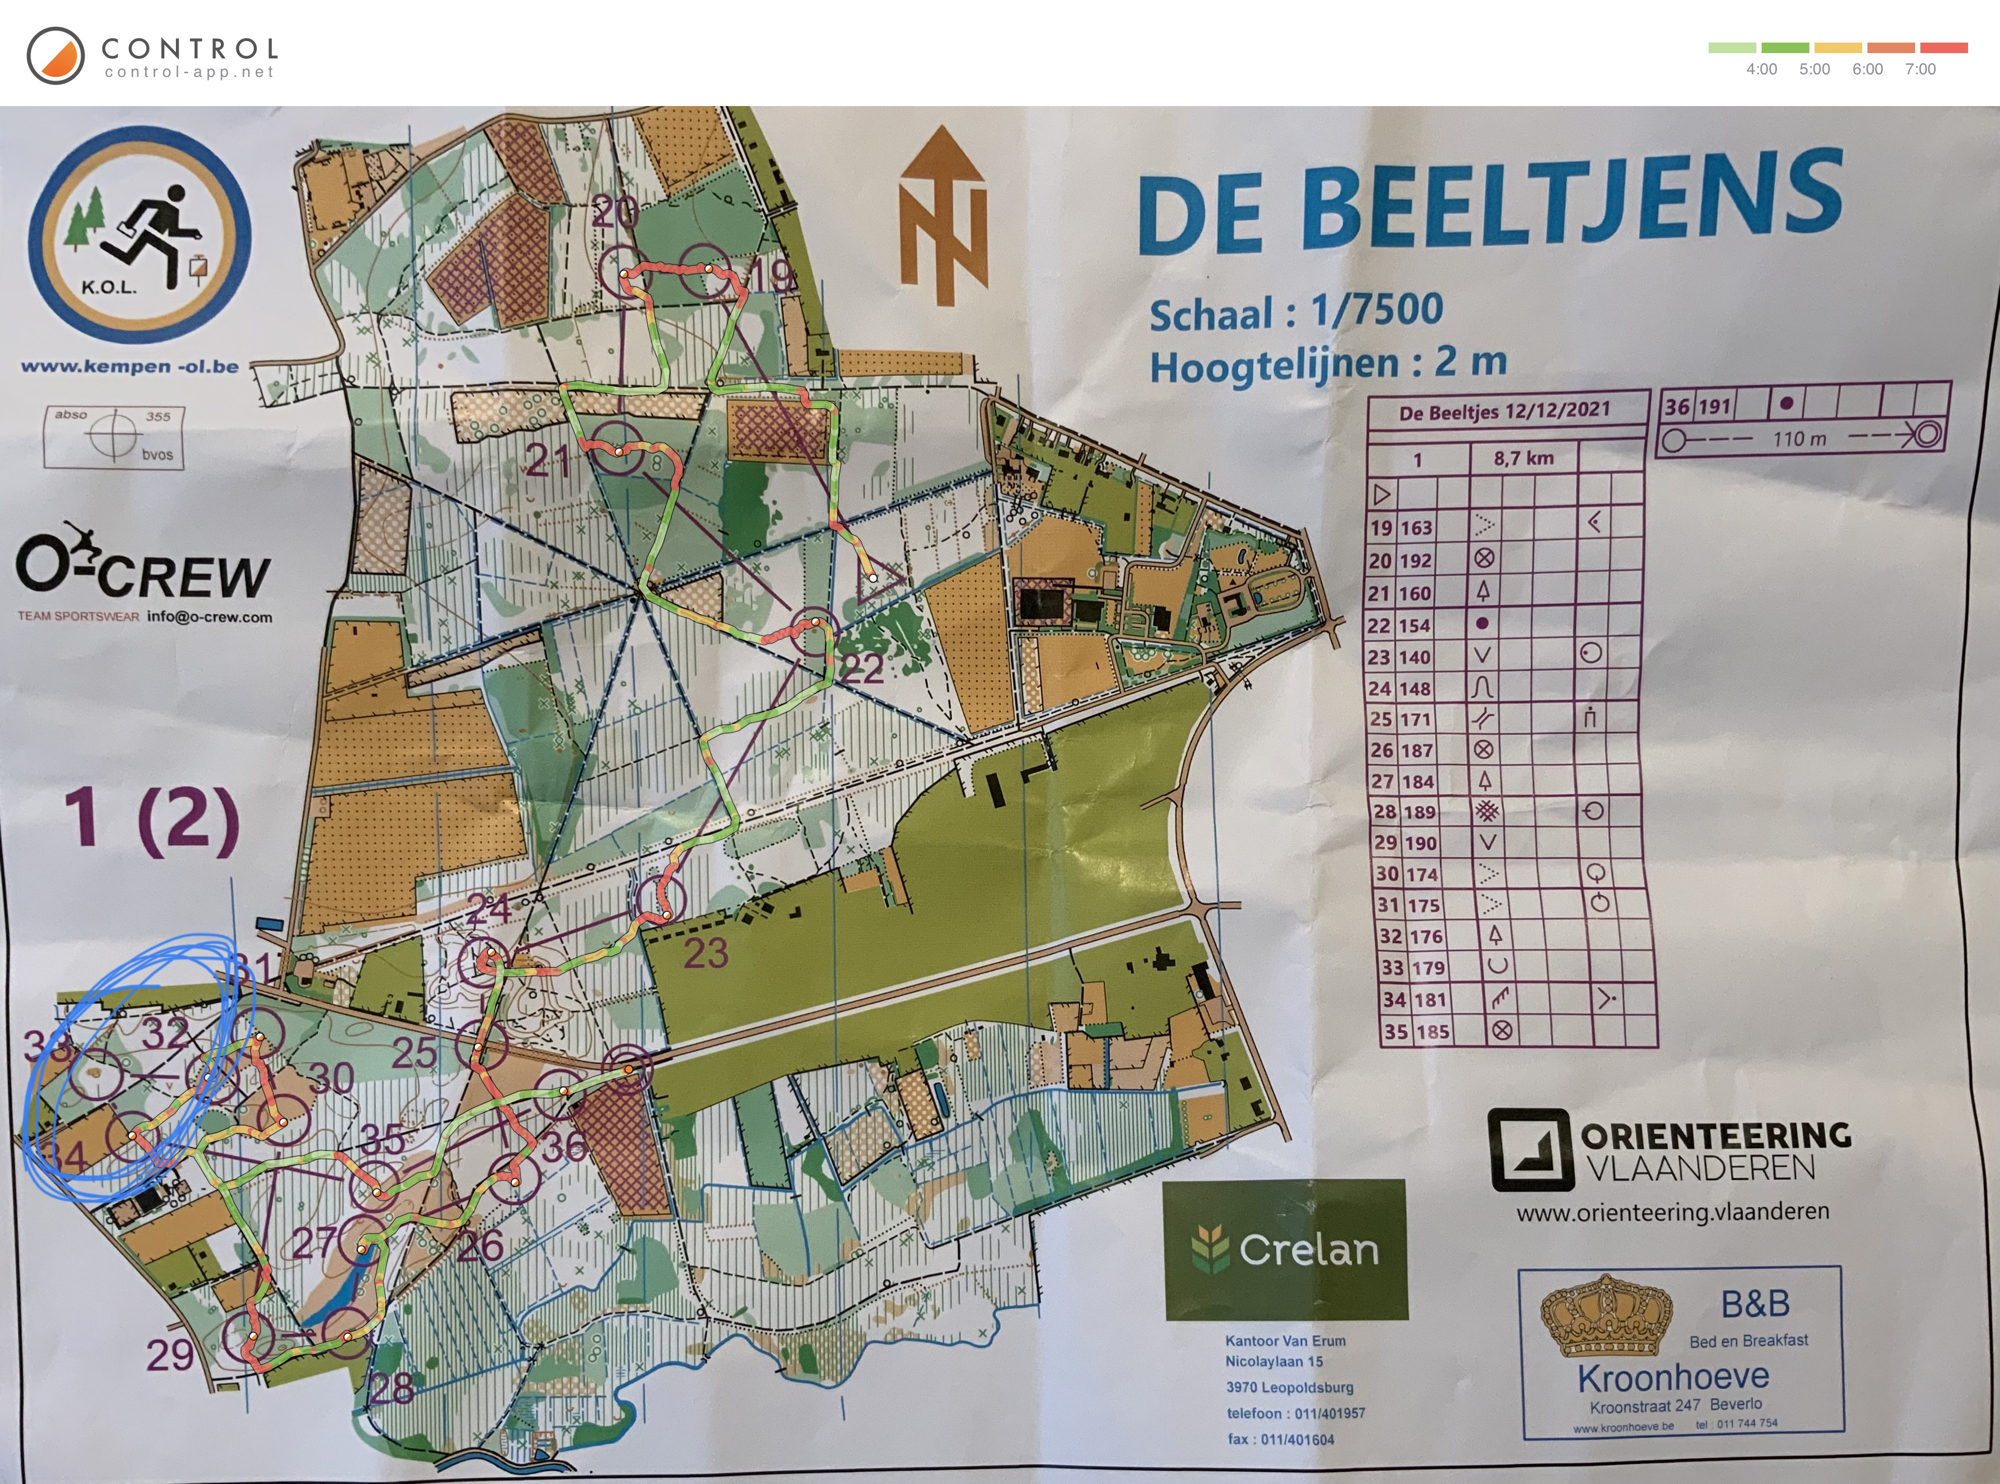 Regionale de Beeltjens - omloop 1 (kaart 2) (12-12-2021)